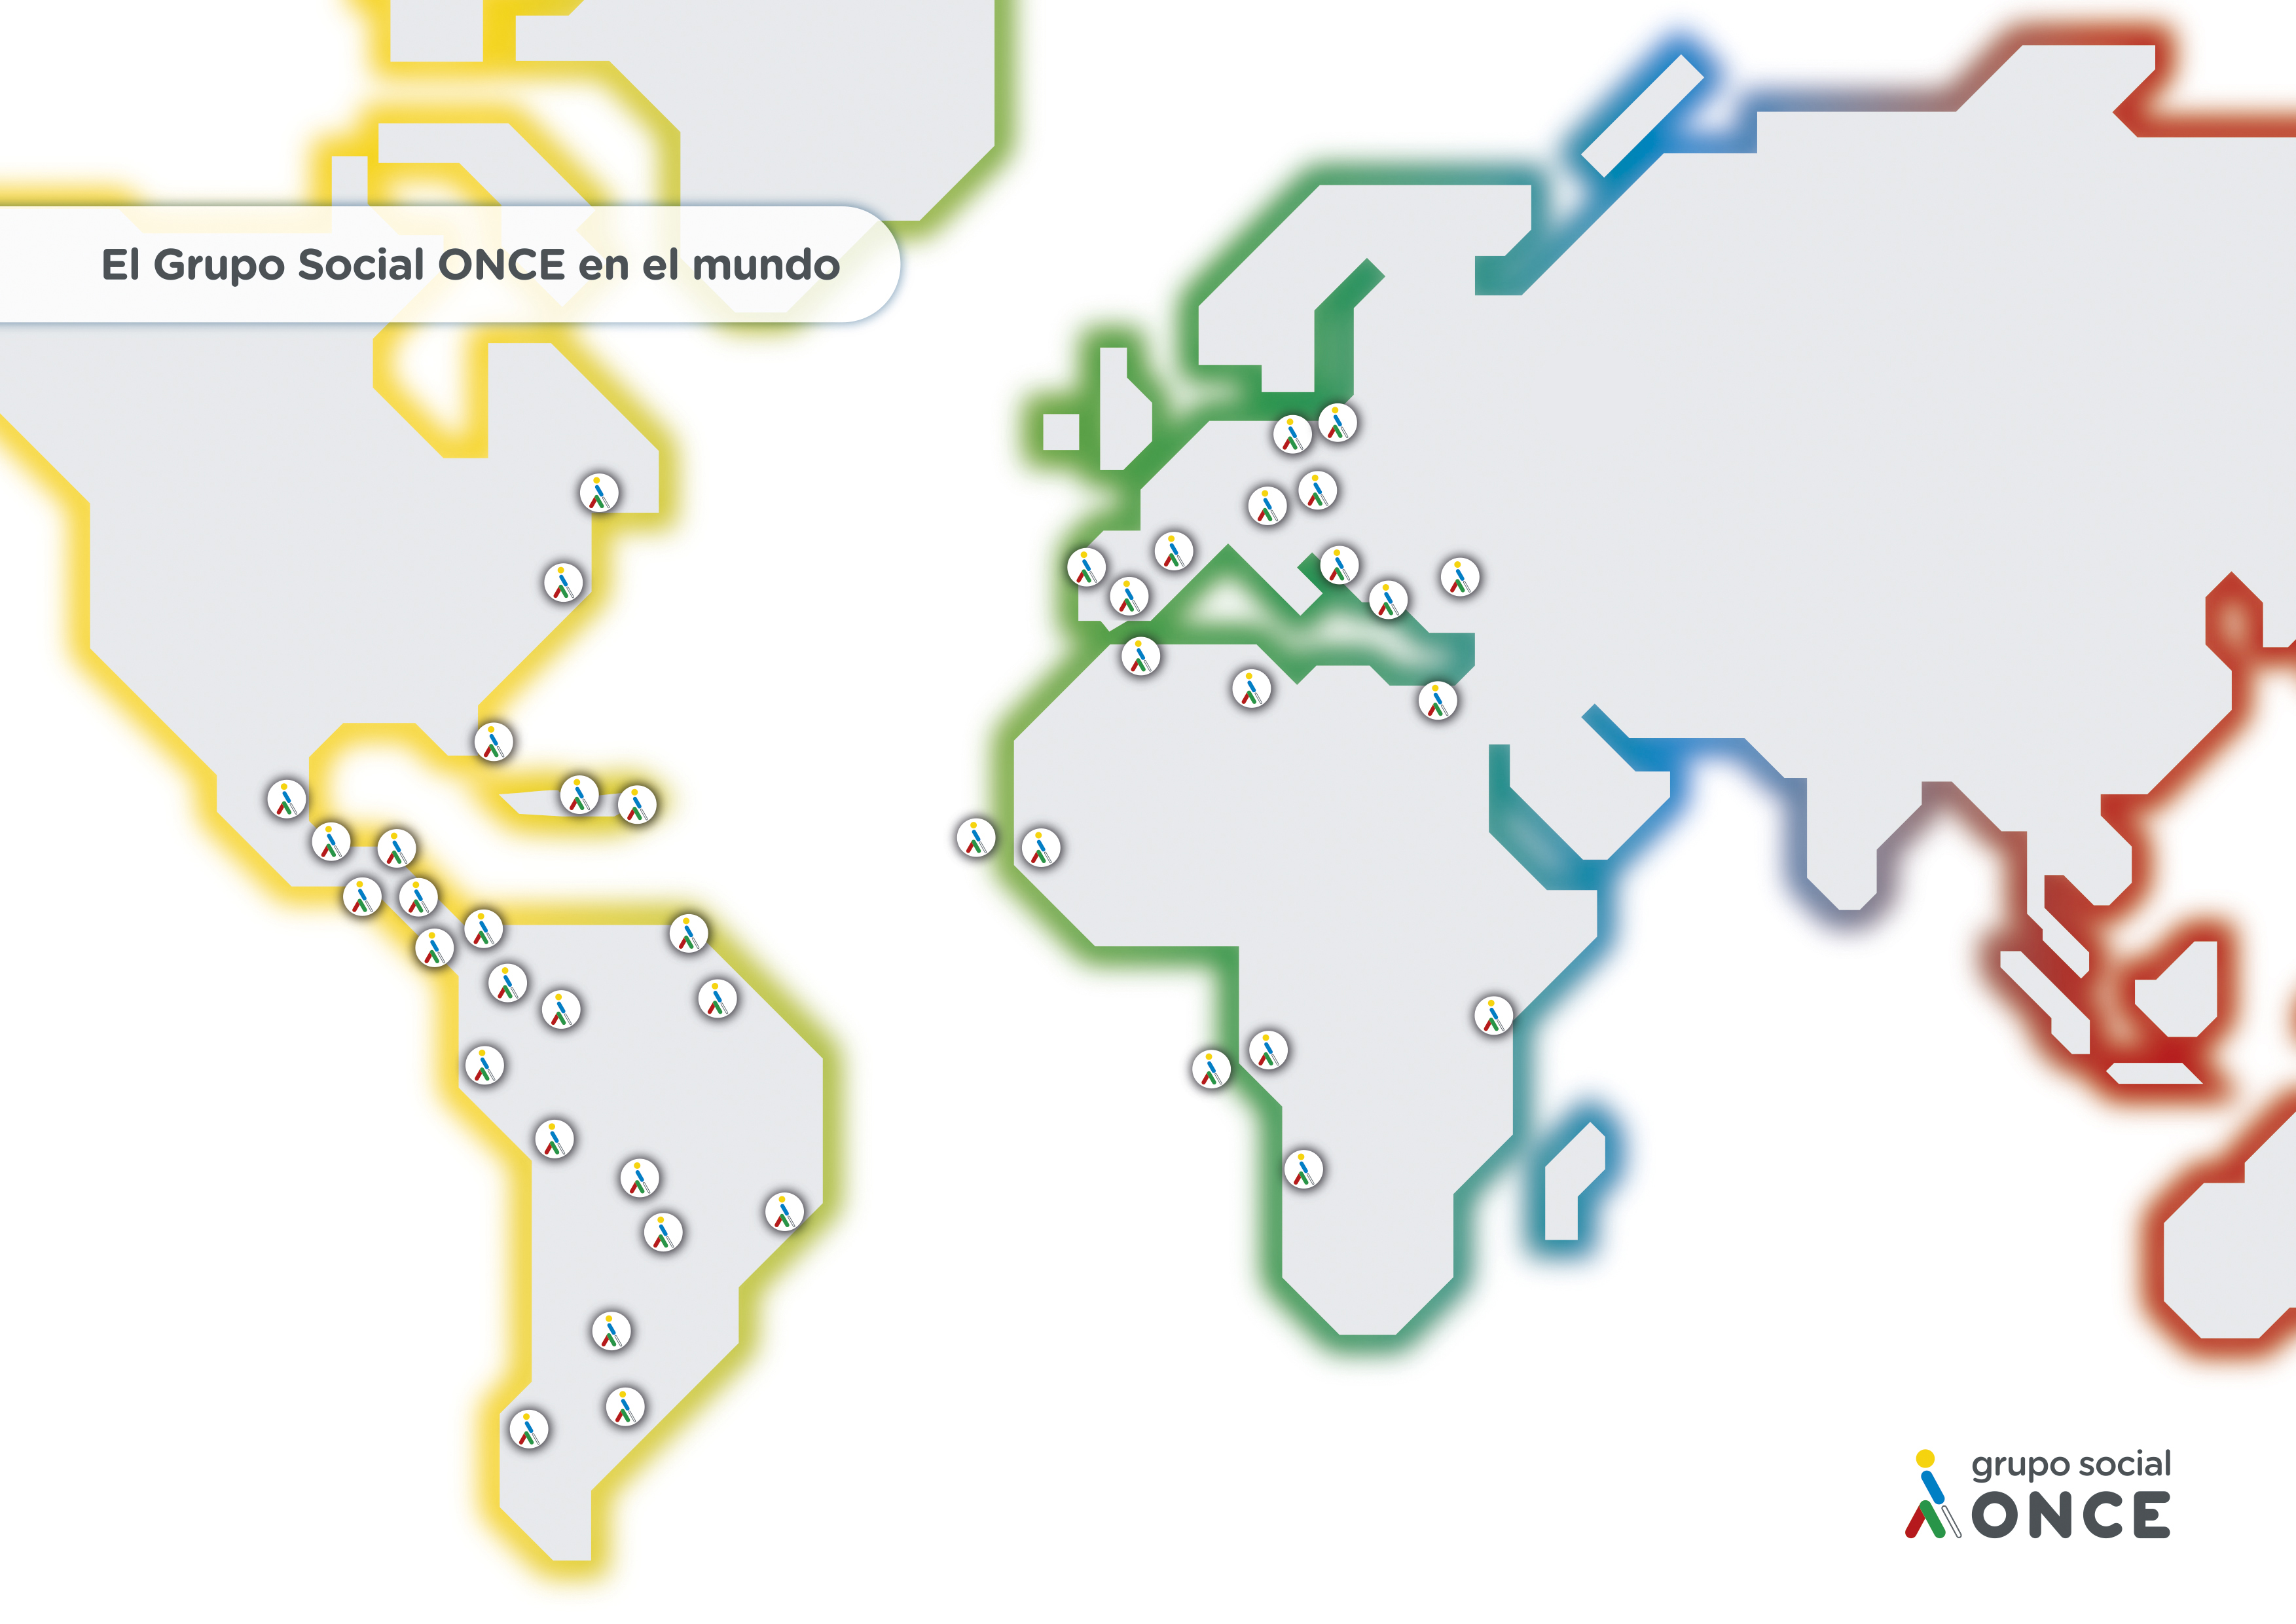 Un mapa del mundo con pequeños logos del Grupo Social ONCE donde este actúa, especialmente casi todos los países de Europa, África, América latina y América del norte.